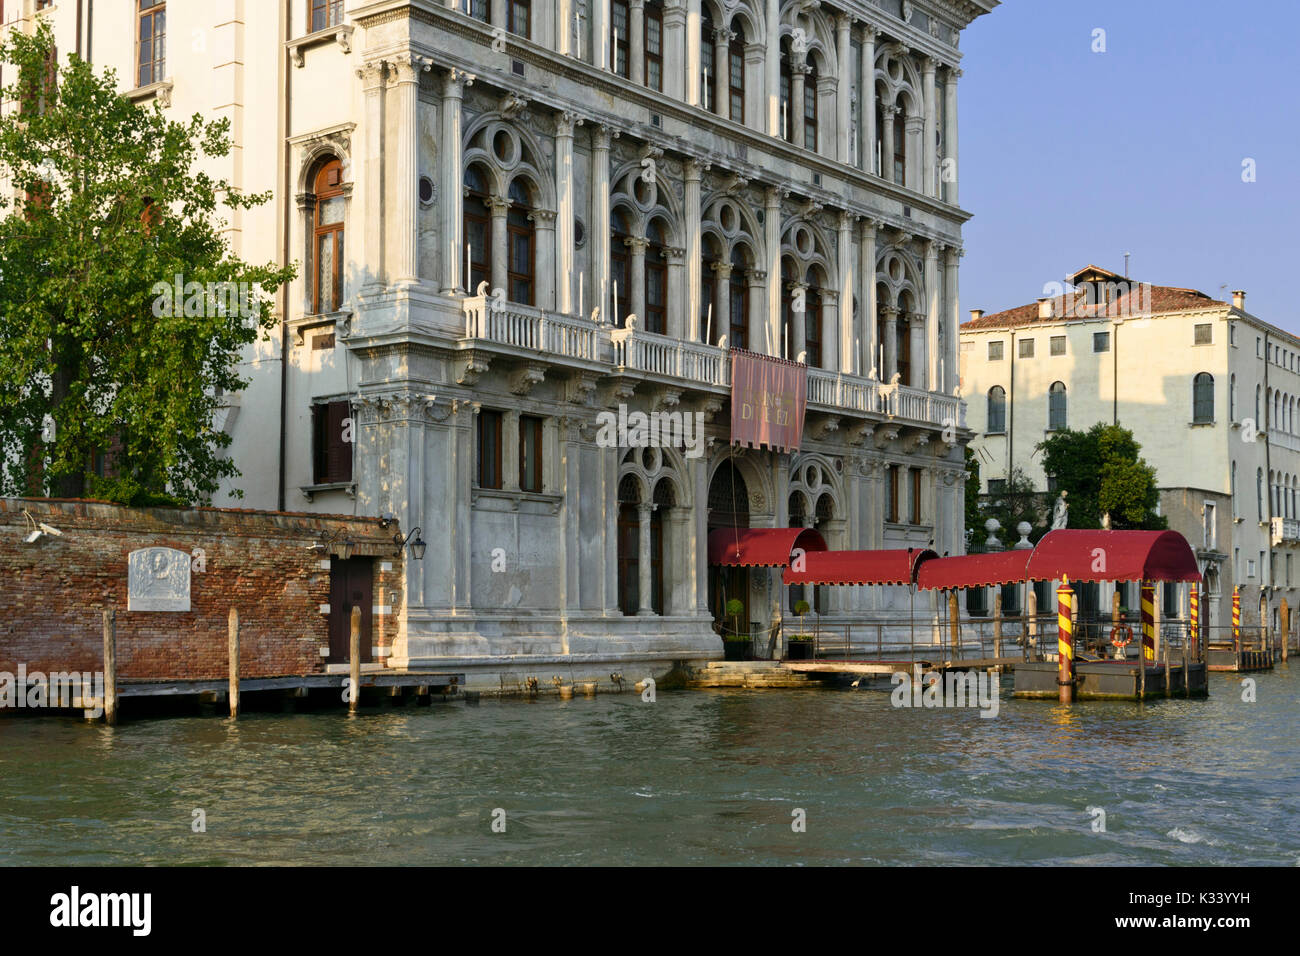 Palazzo Vendramin-Calergi, Venice, Italy Stock Photo